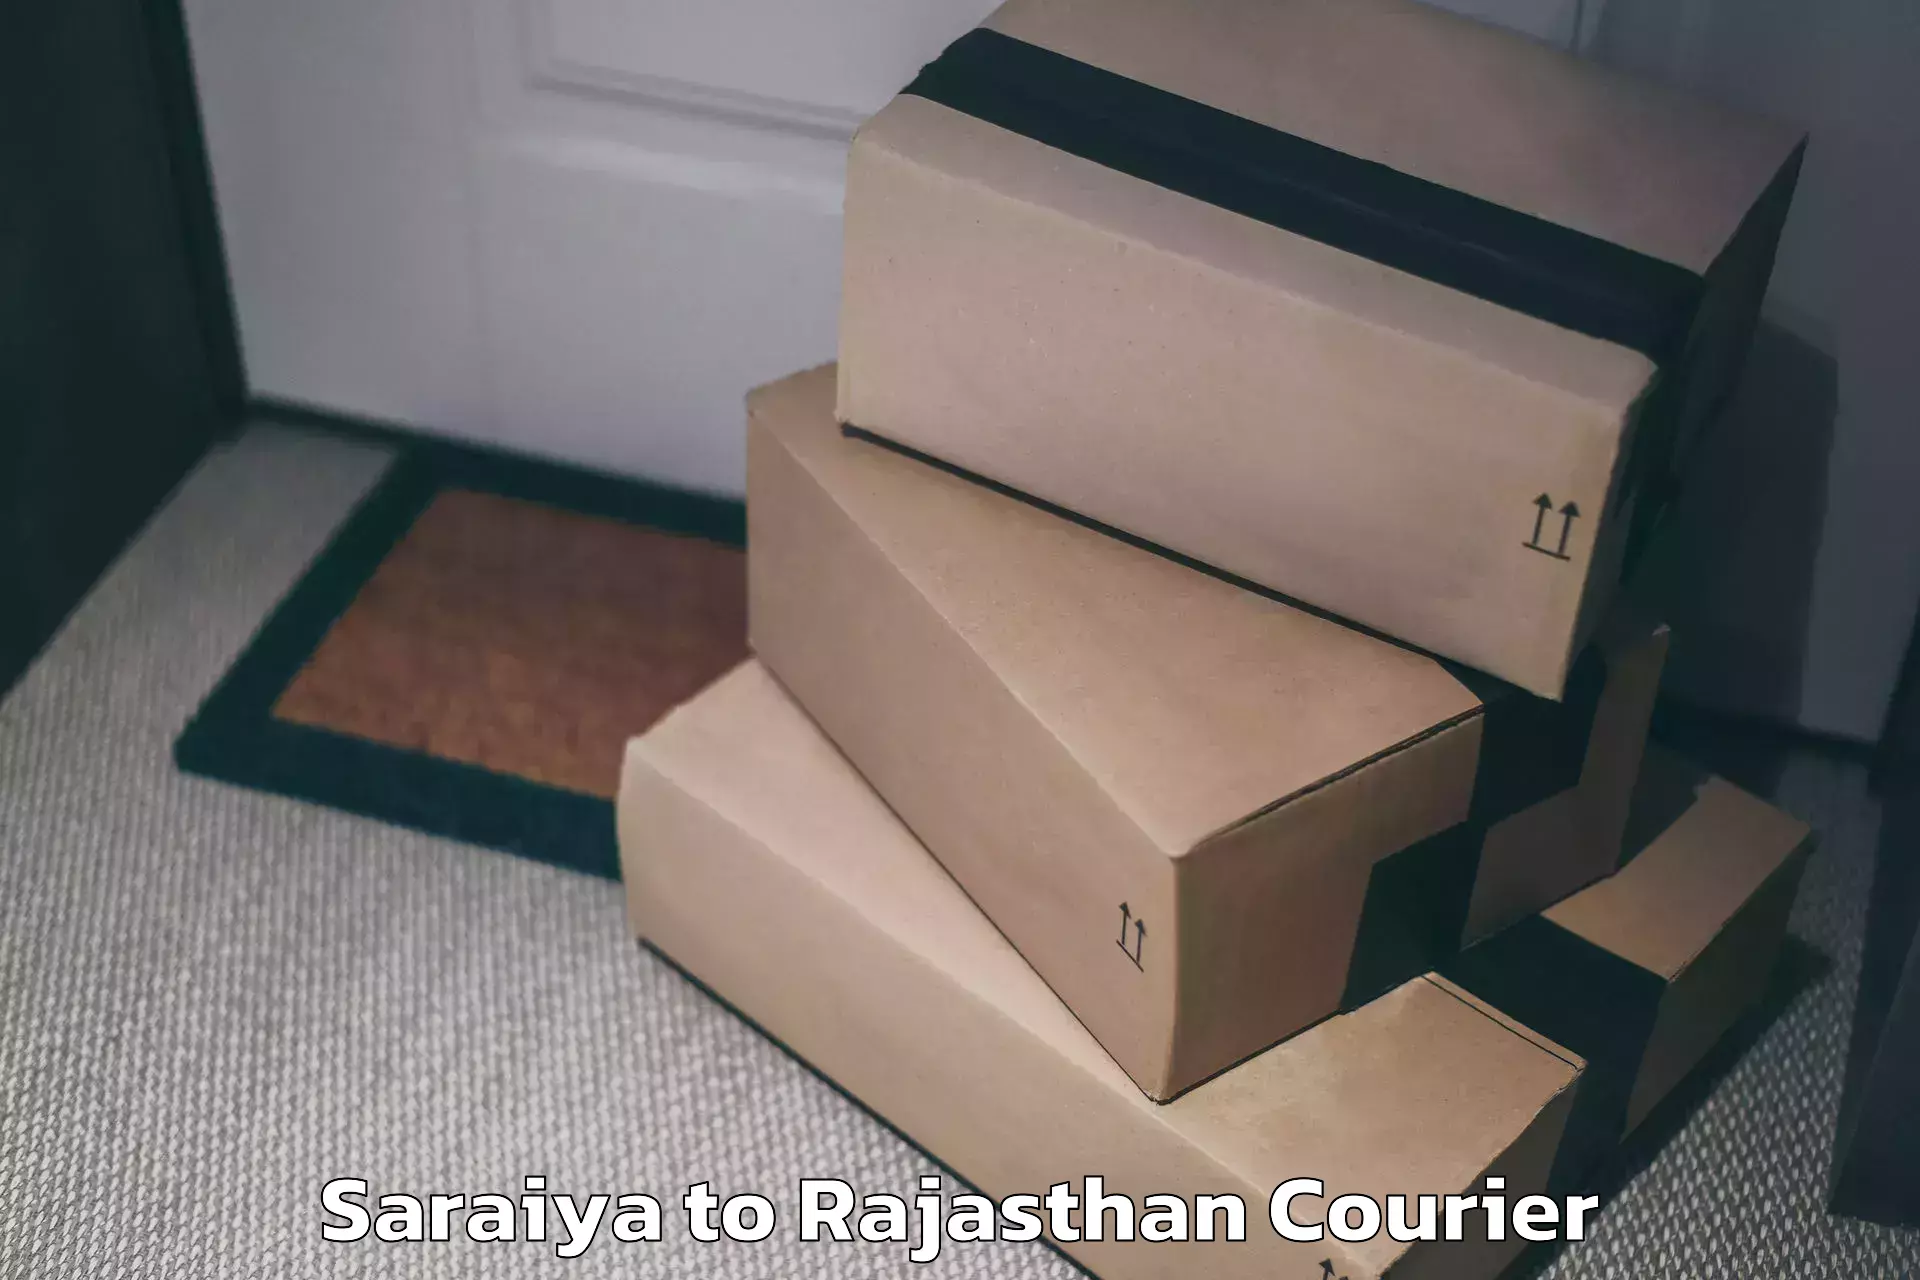 Luggage transport consultancy Saraiya to Bhatewar